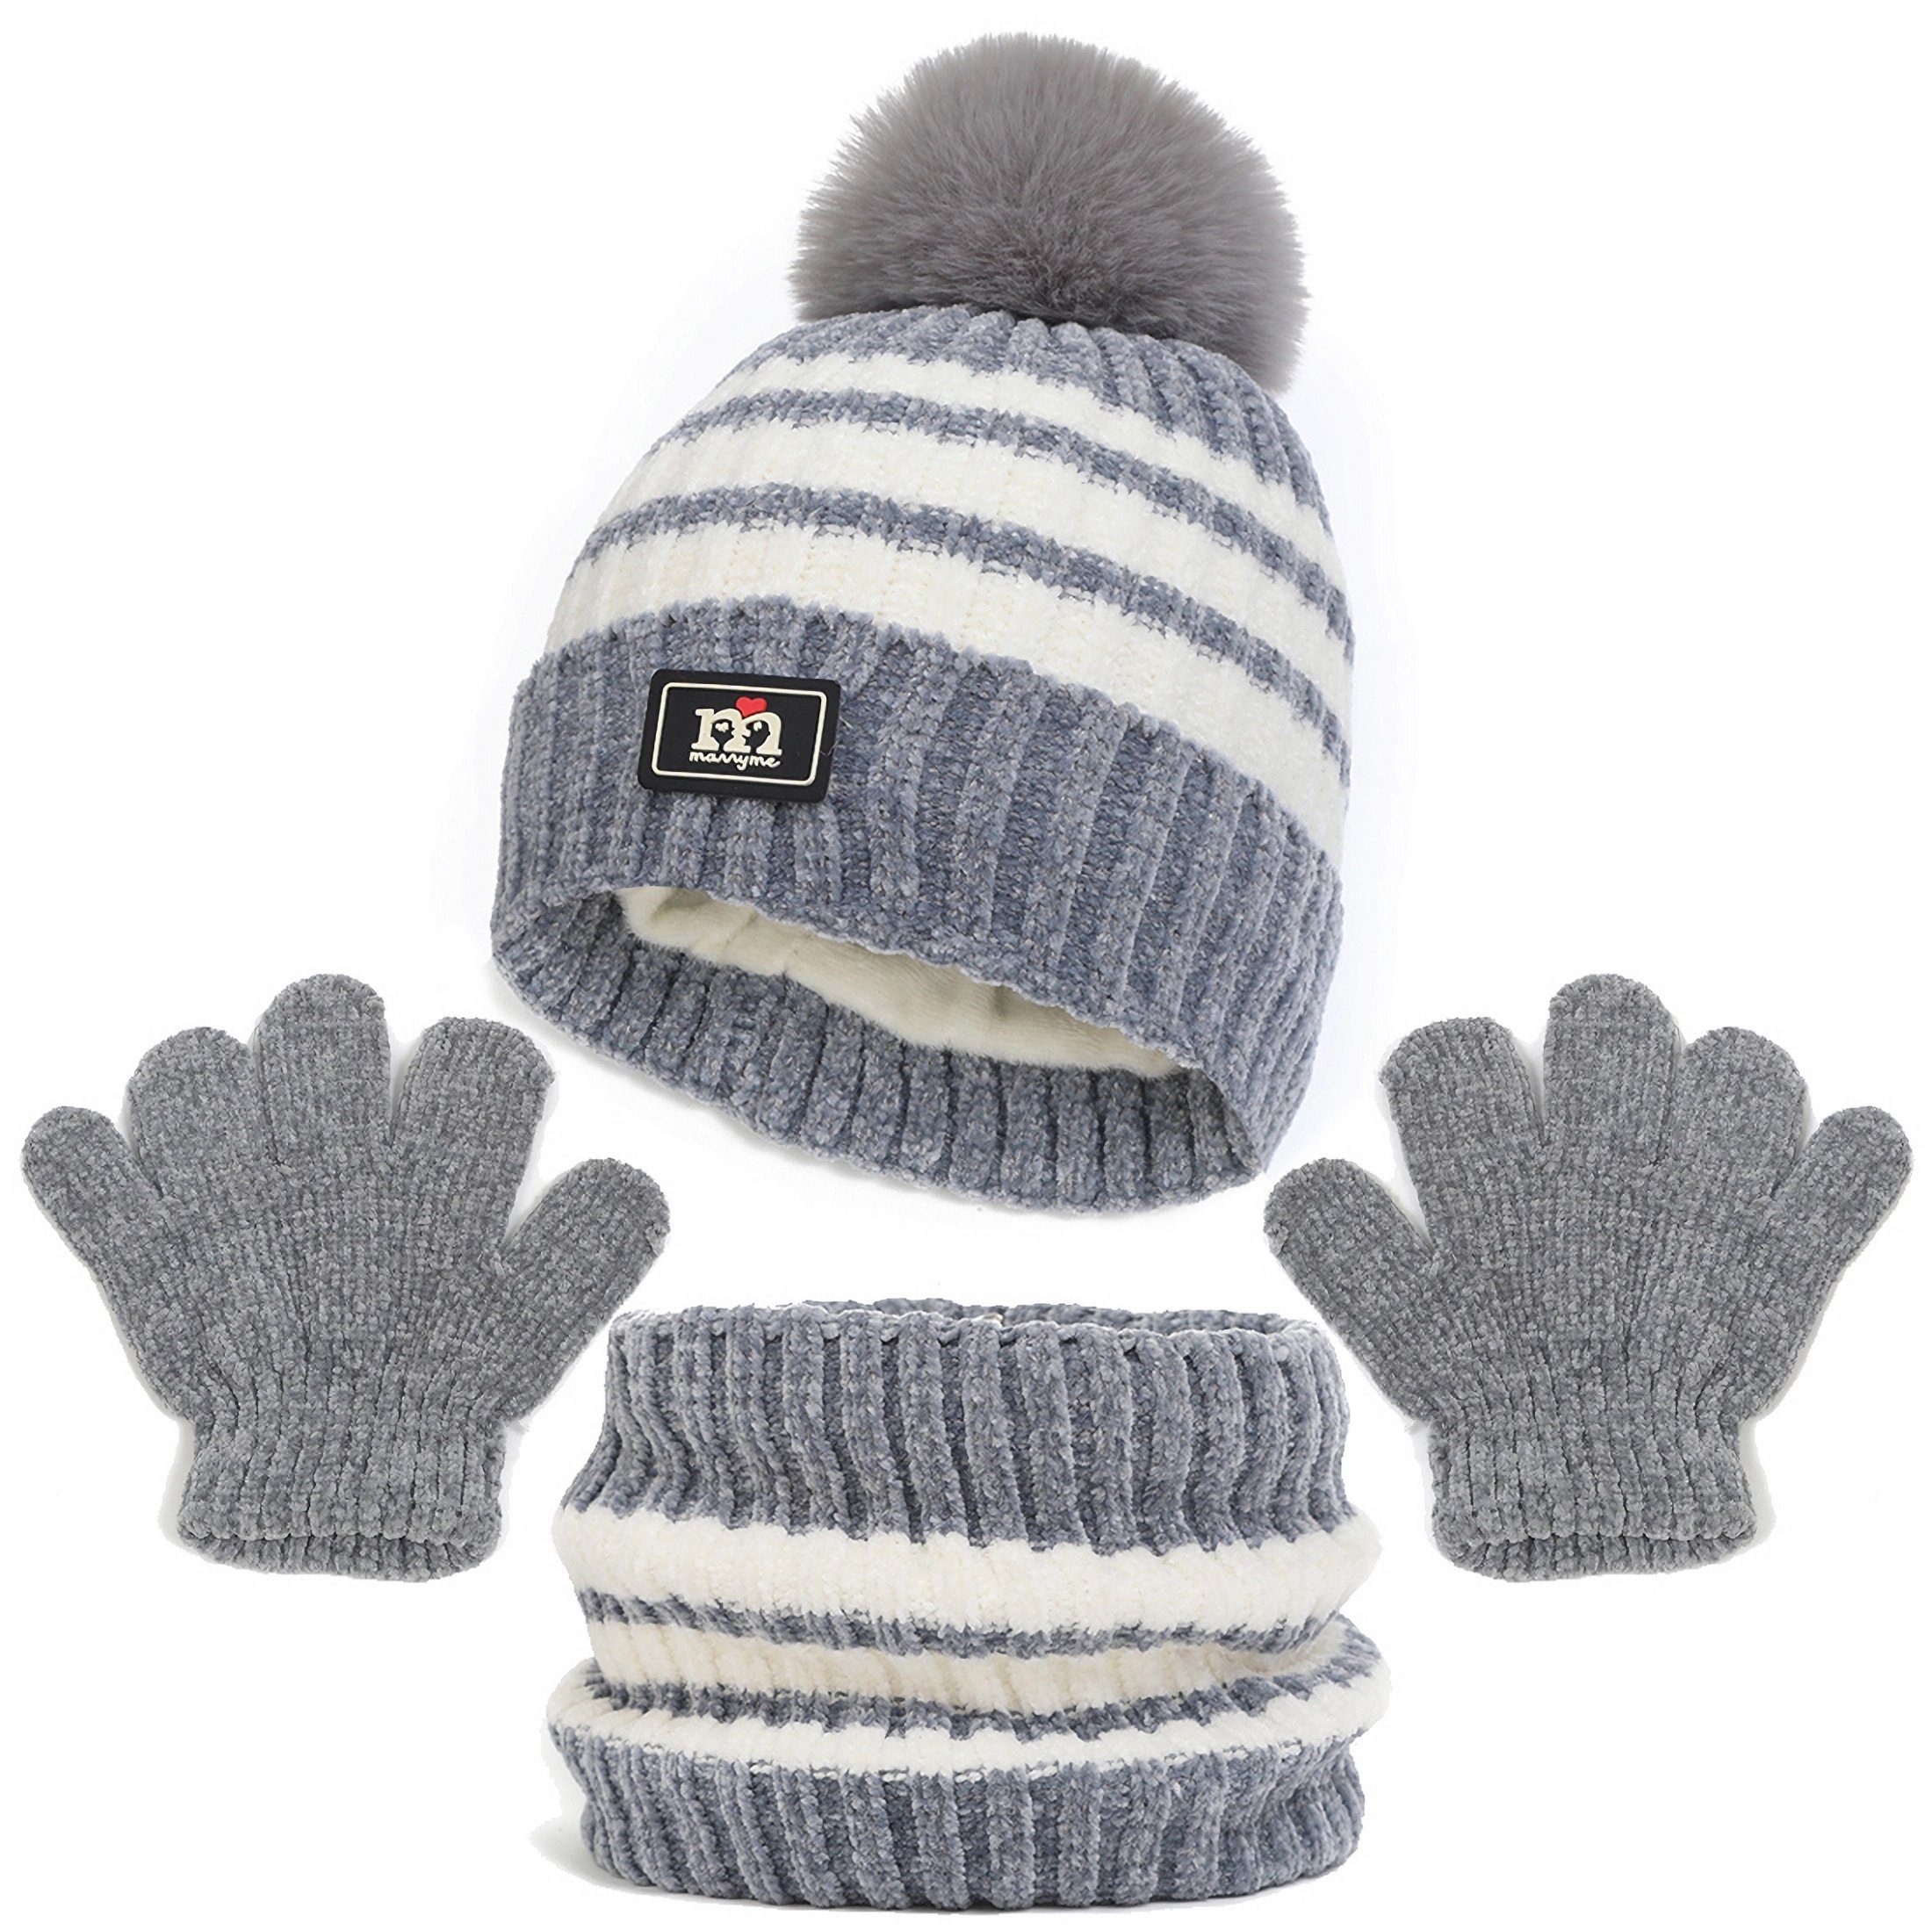 Coonoor Filzhut Mütze & Schal Kinder Unisex Schal Mütze Handschuhe Set (Wintermütze, Schal, Handschuhe, dreiteiliges Set) Grau | Filzhüte